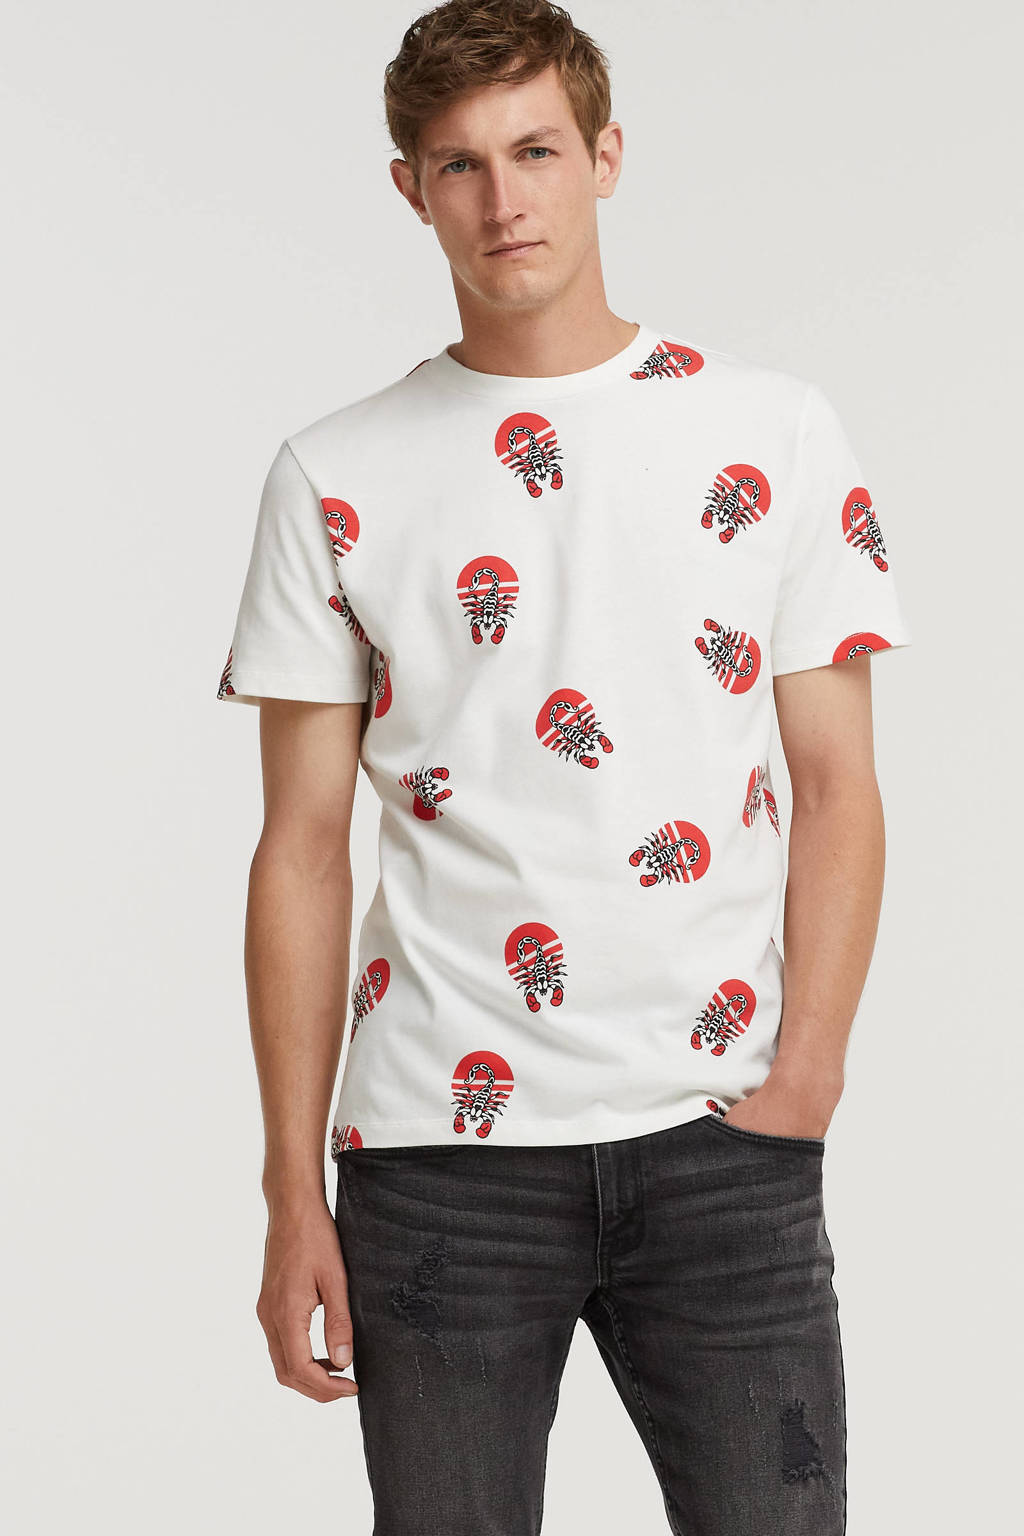 hardwerkend delicatesse Kapel Kultivate T-shirt van biologisch katoen wit/rood | wehkamp